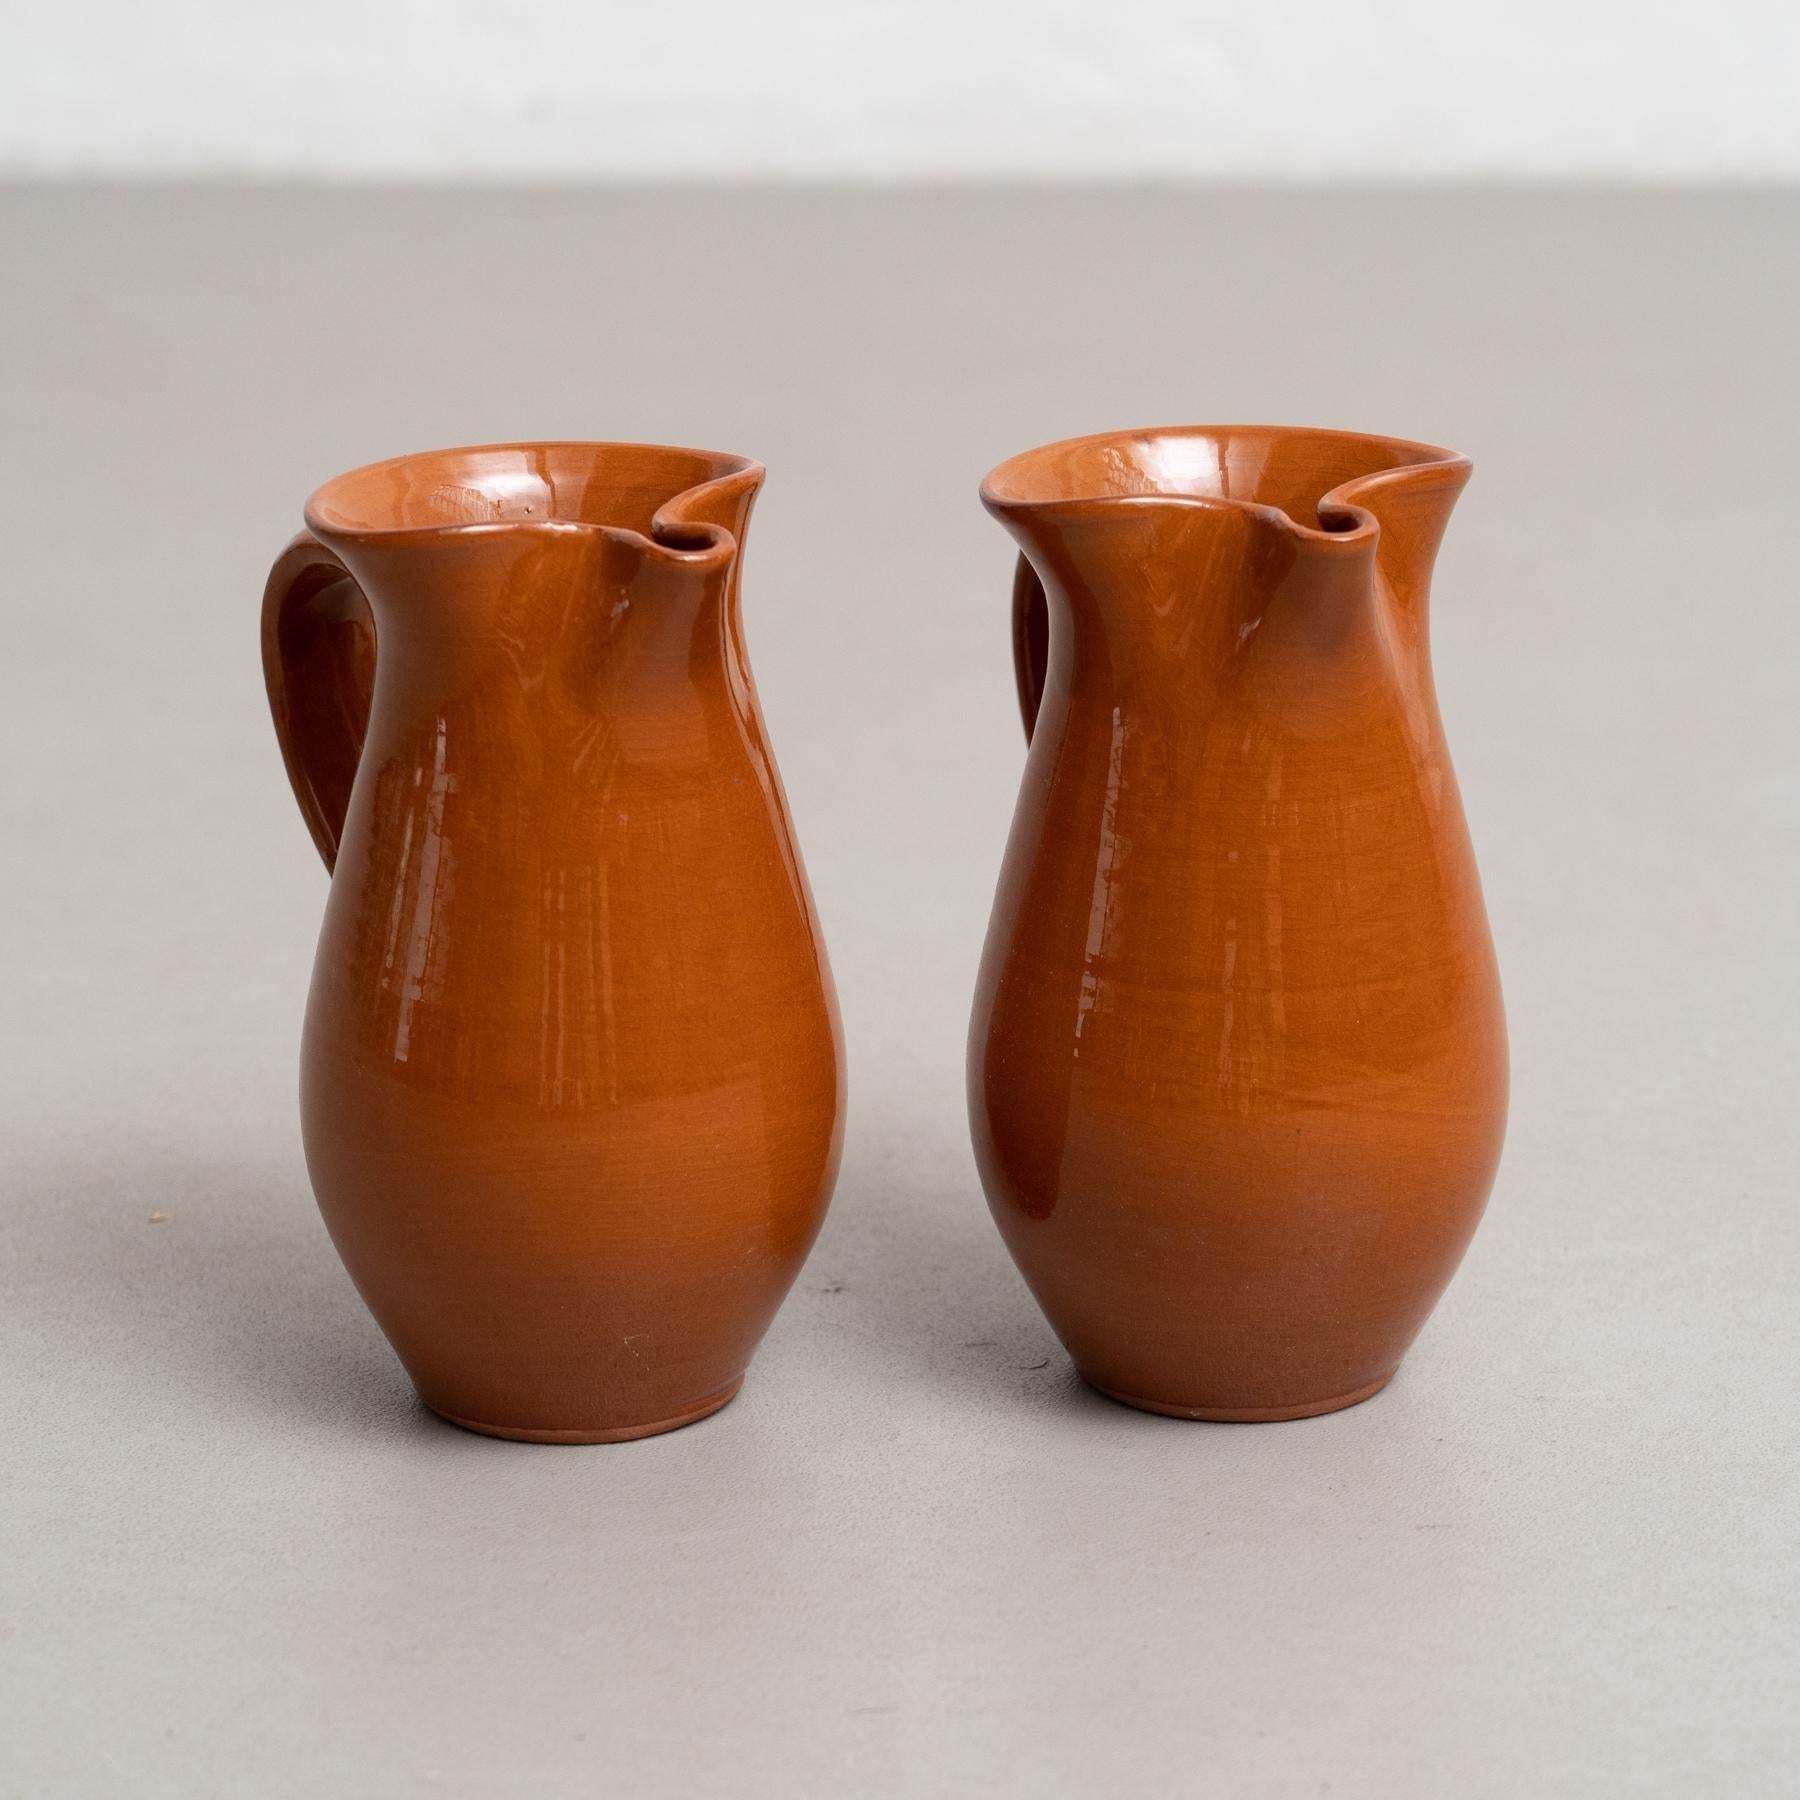 Mitte des 20. Jahrhunderts, zwei traditionelle spanische Keramikvasen.

Hergestellt in Spanien.

In ursprünglichem Zustand mit geringen Gebrauchsspuren, die dem Alter und dem Gebrauch entsprechen, wobei eine schöne Patina erhalten